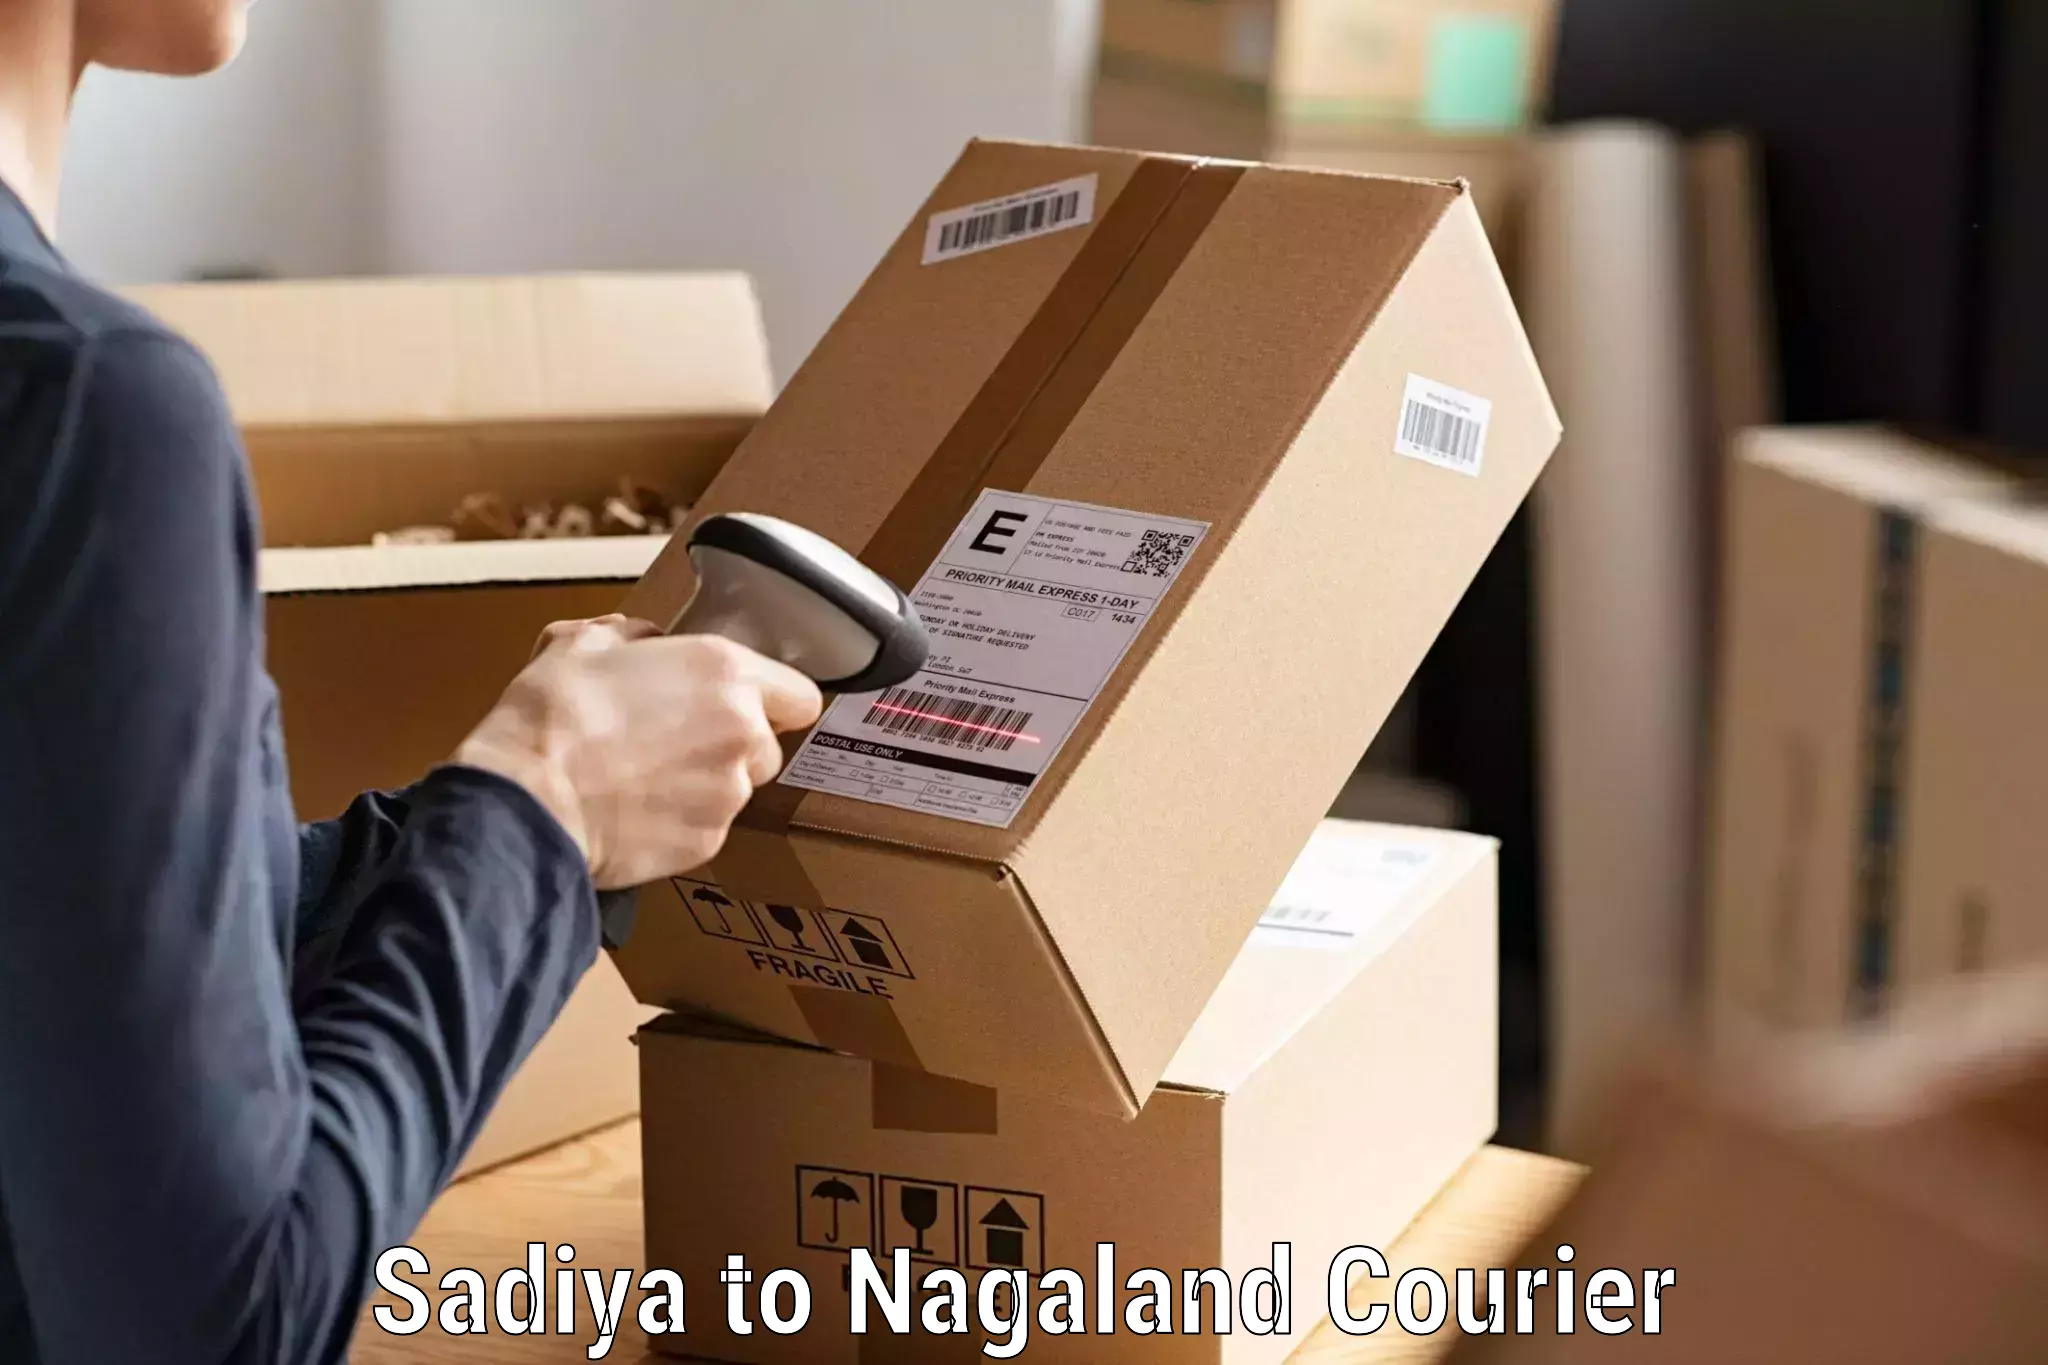 Advanced tracking systems Sadiya to NIT Nagaland